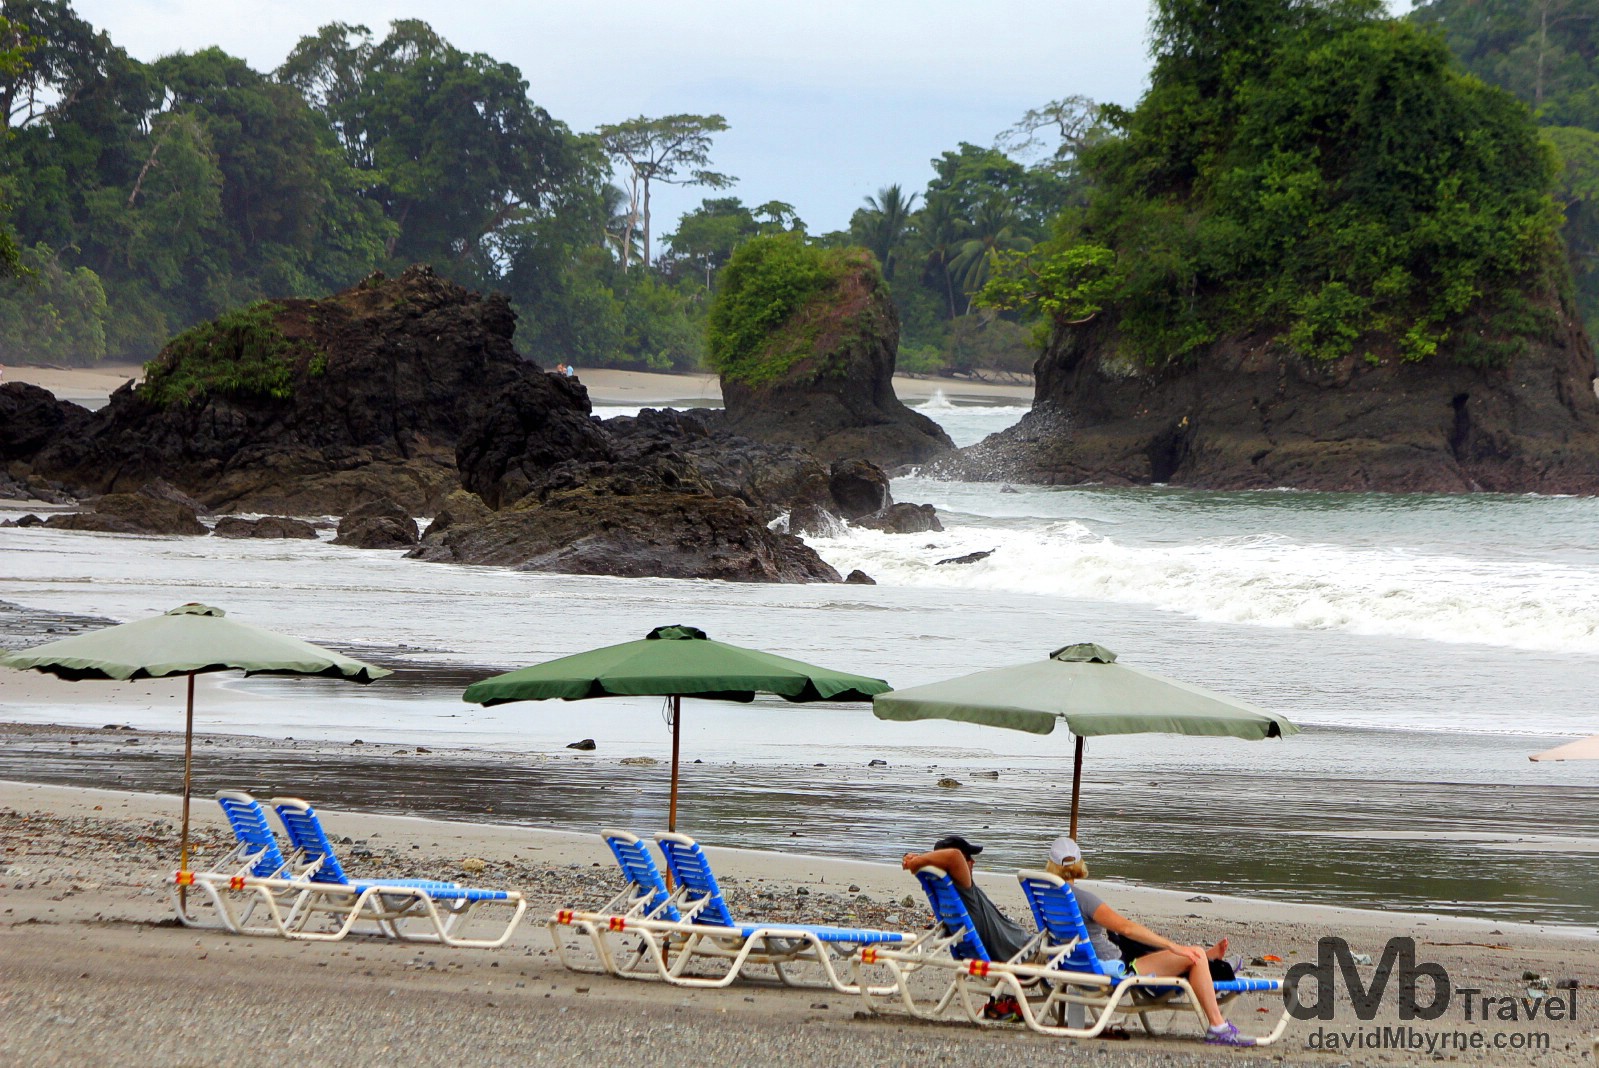 The beach at Manuel Antonio on the edge of Parque Nacional Manuel Antonio, Costa Rica. June 26th 2013. 